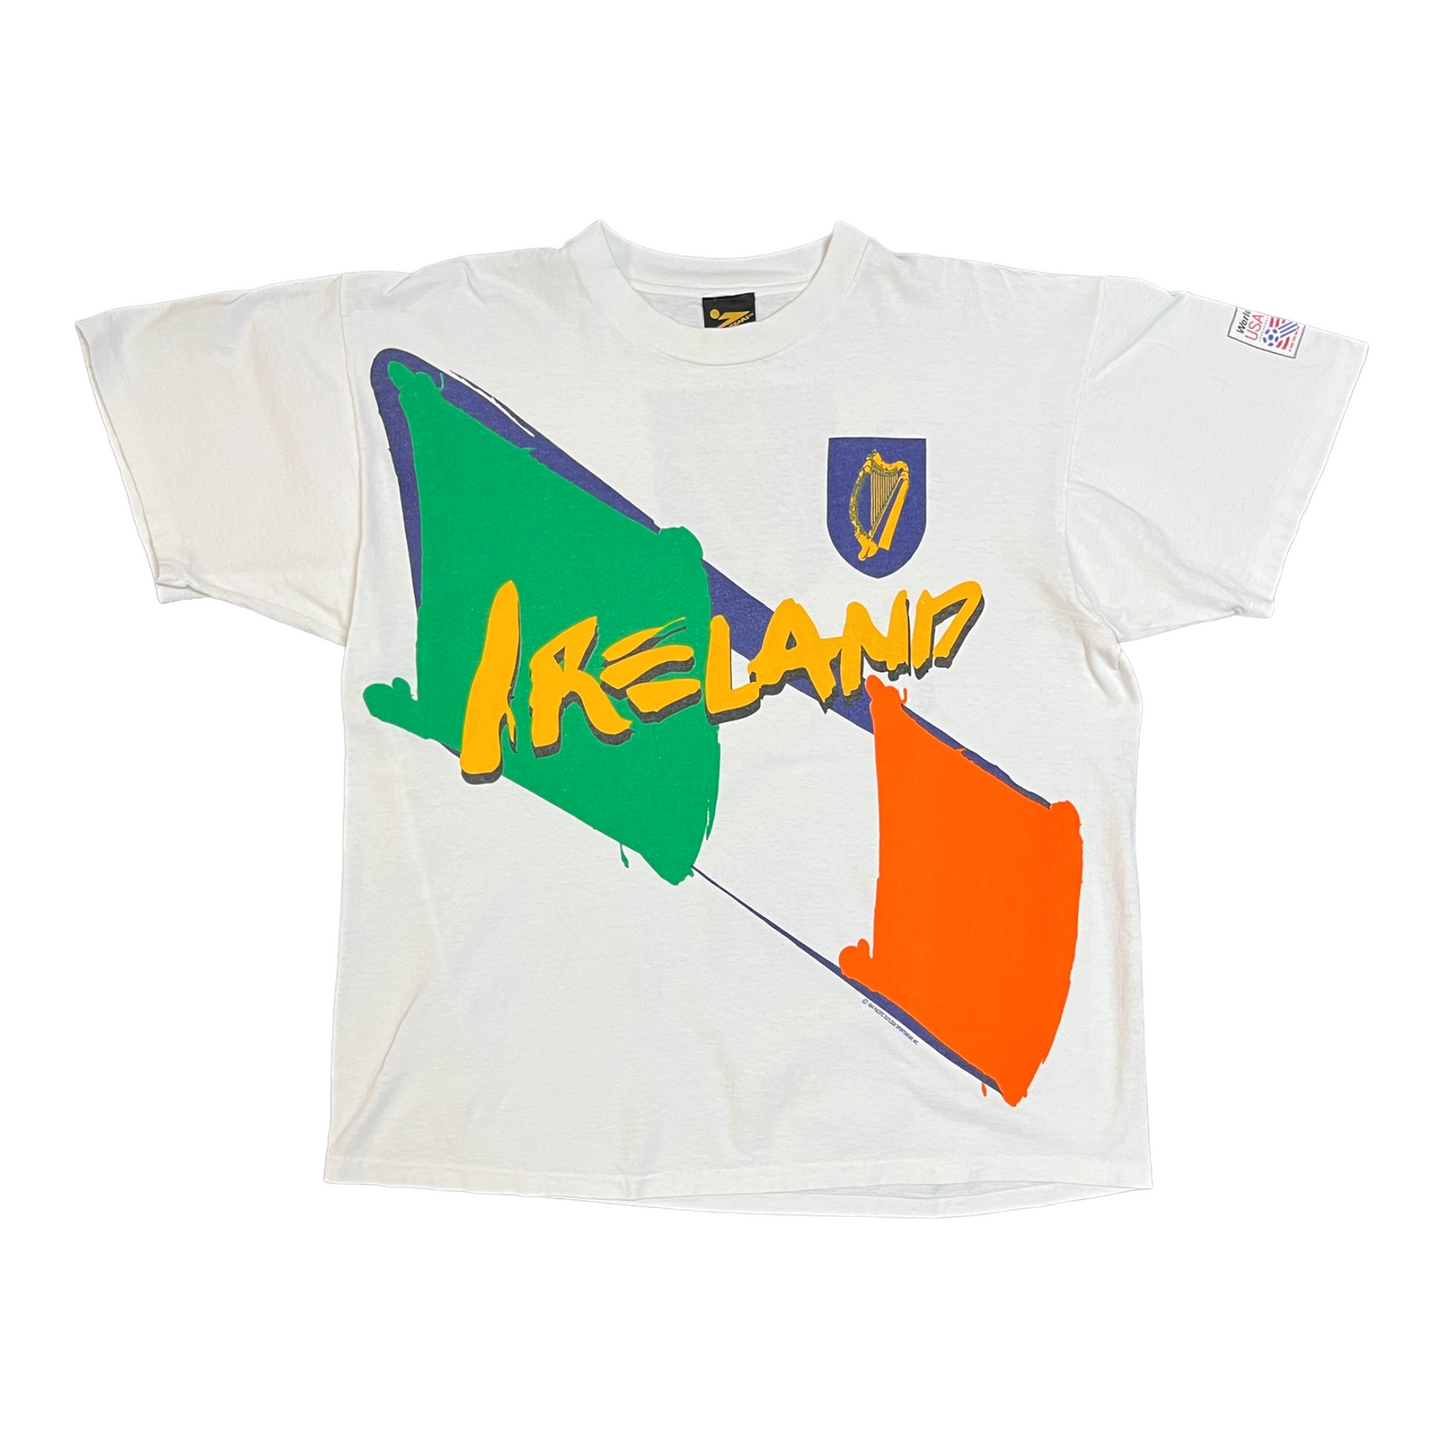 Vintage World Cup 94 Ireland tee XL